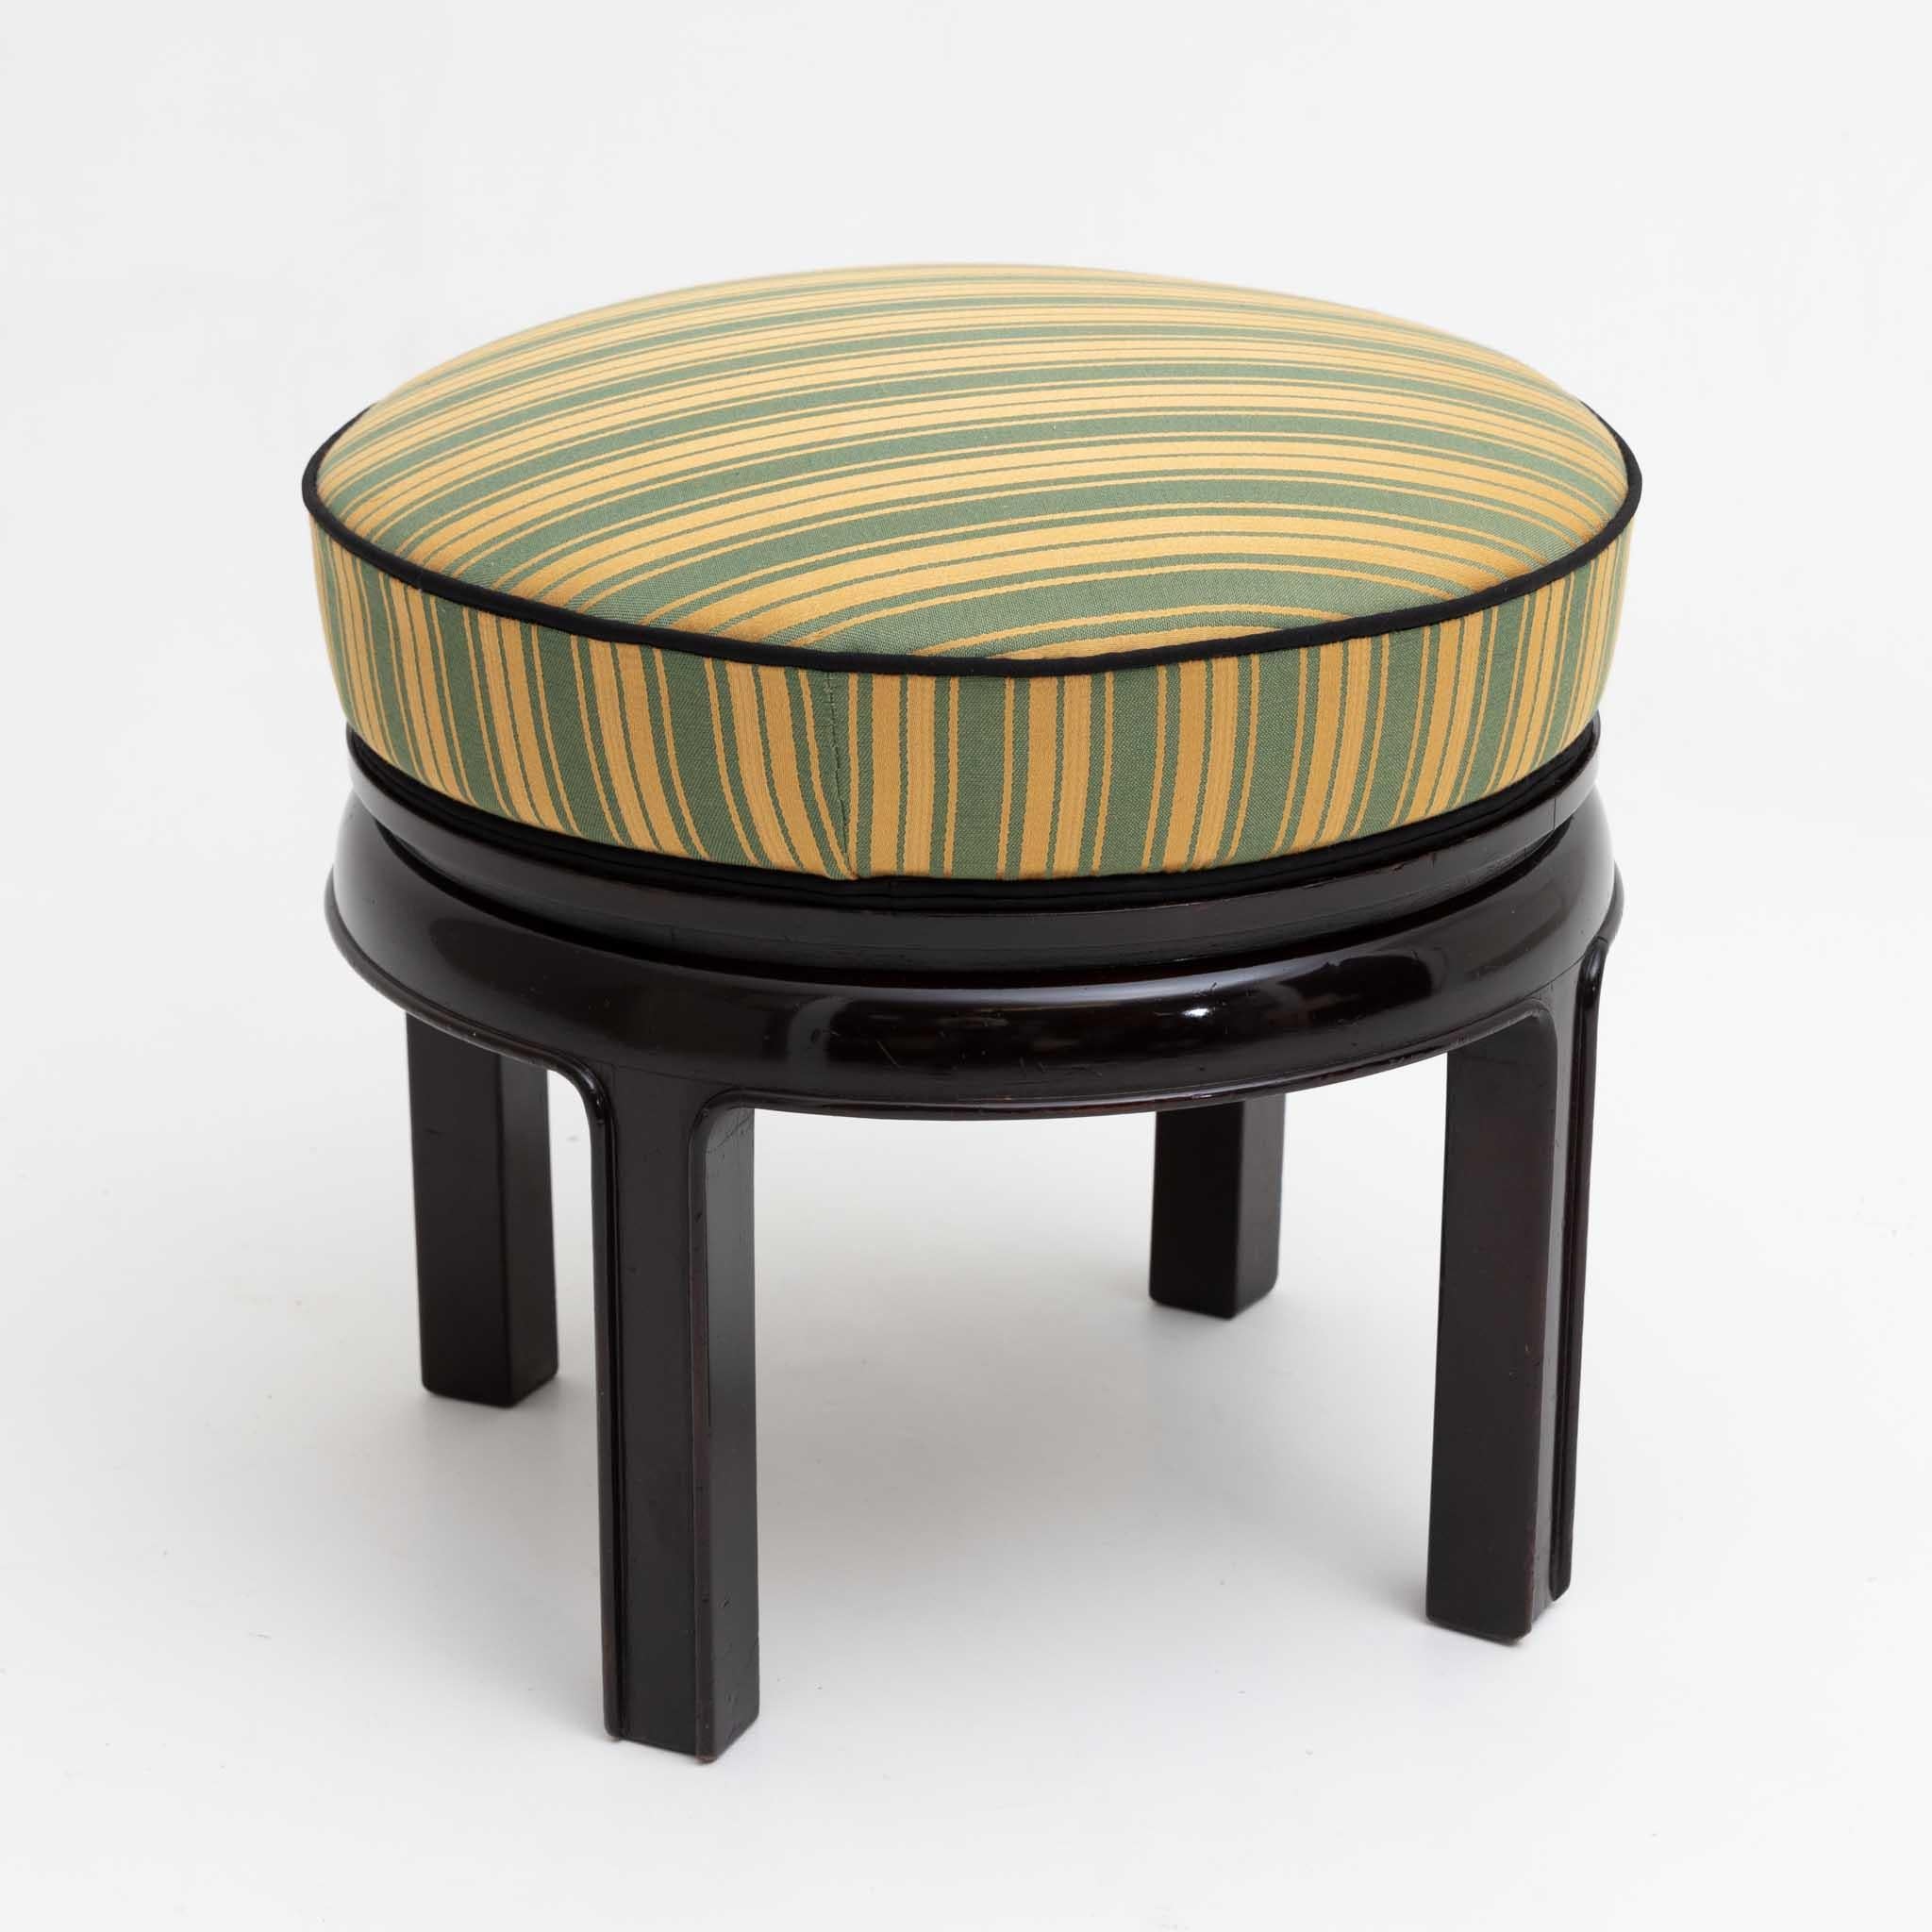 Art Deco Hocker mit rundem, gepolstertem Sitz und ebonisiertem Gestell auf vier geraden Beinen. Der grün-gelb gestreifte Umschlag ist neu und mit einer schwarzen Paspelierung versehen worden.